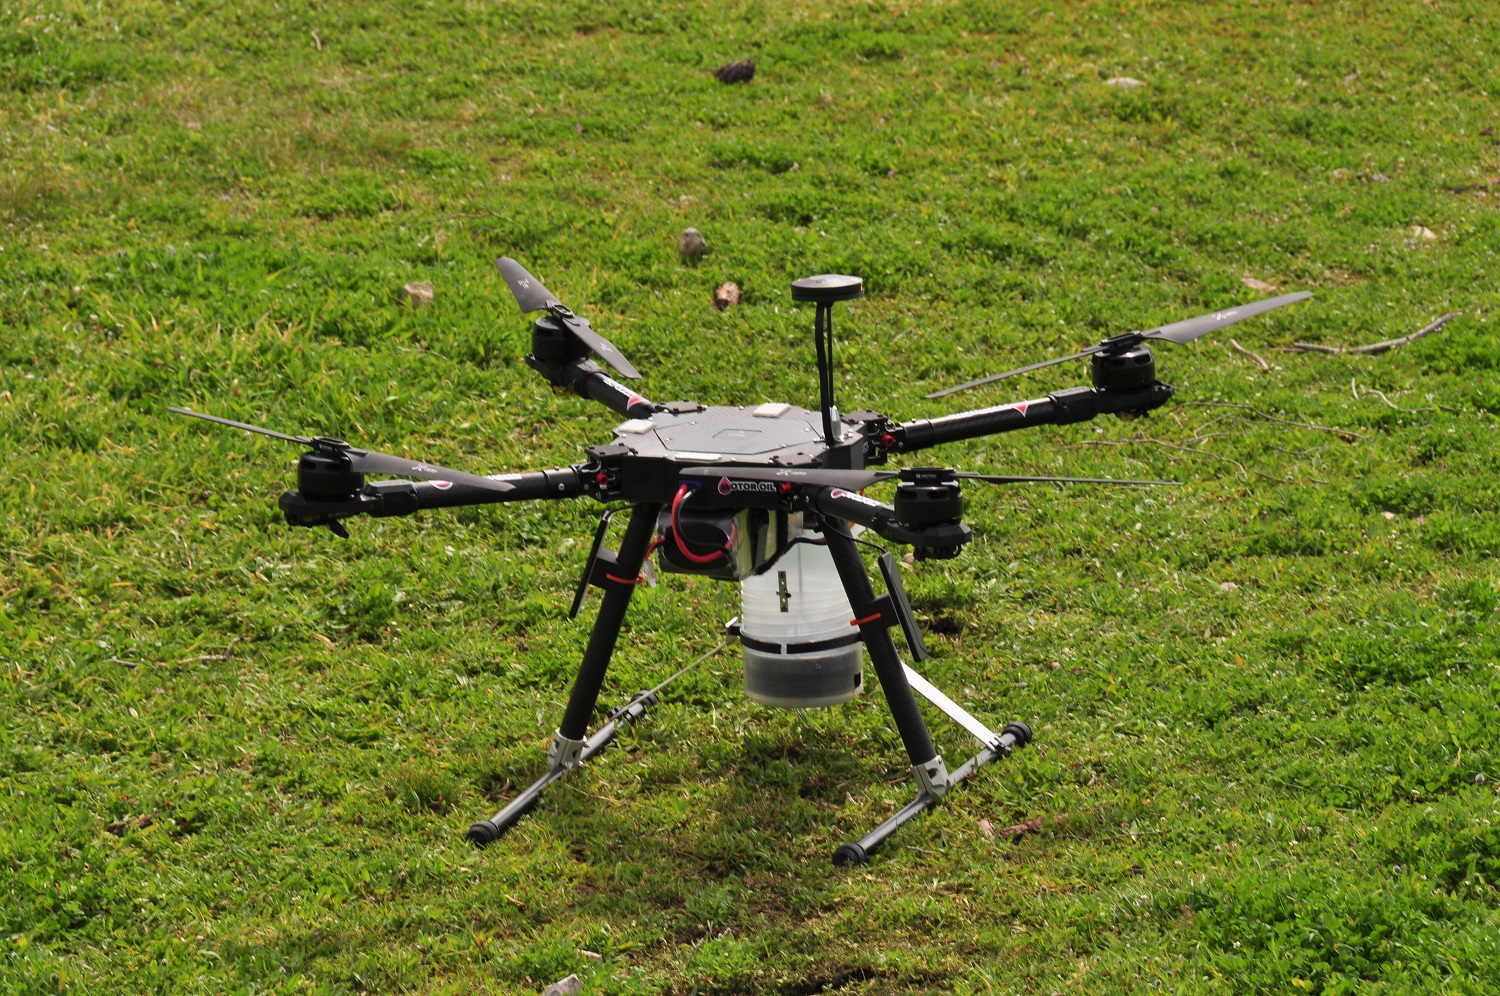 Γεωπονικό Πανεπιστήμιο Αθηνών: Πιλοτική τεχνική αναδάσωσης μέσω drone για πρώτη φορά στην Ελλάδα